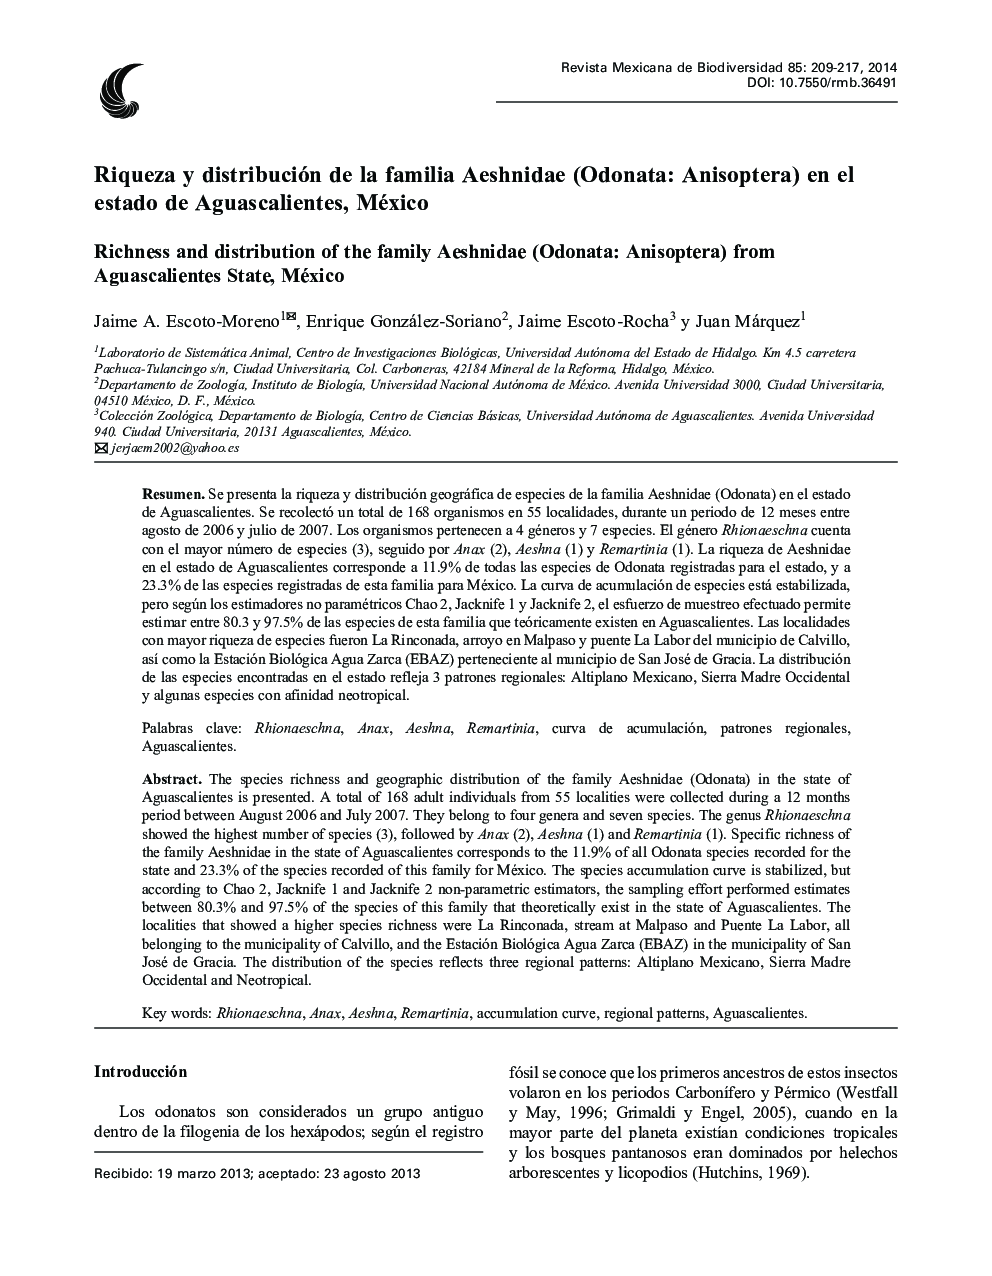 Riqueza y distribución de la familia Aeshnidae (Odonata: Anisoptera) en el estado de Aguascalientes, México